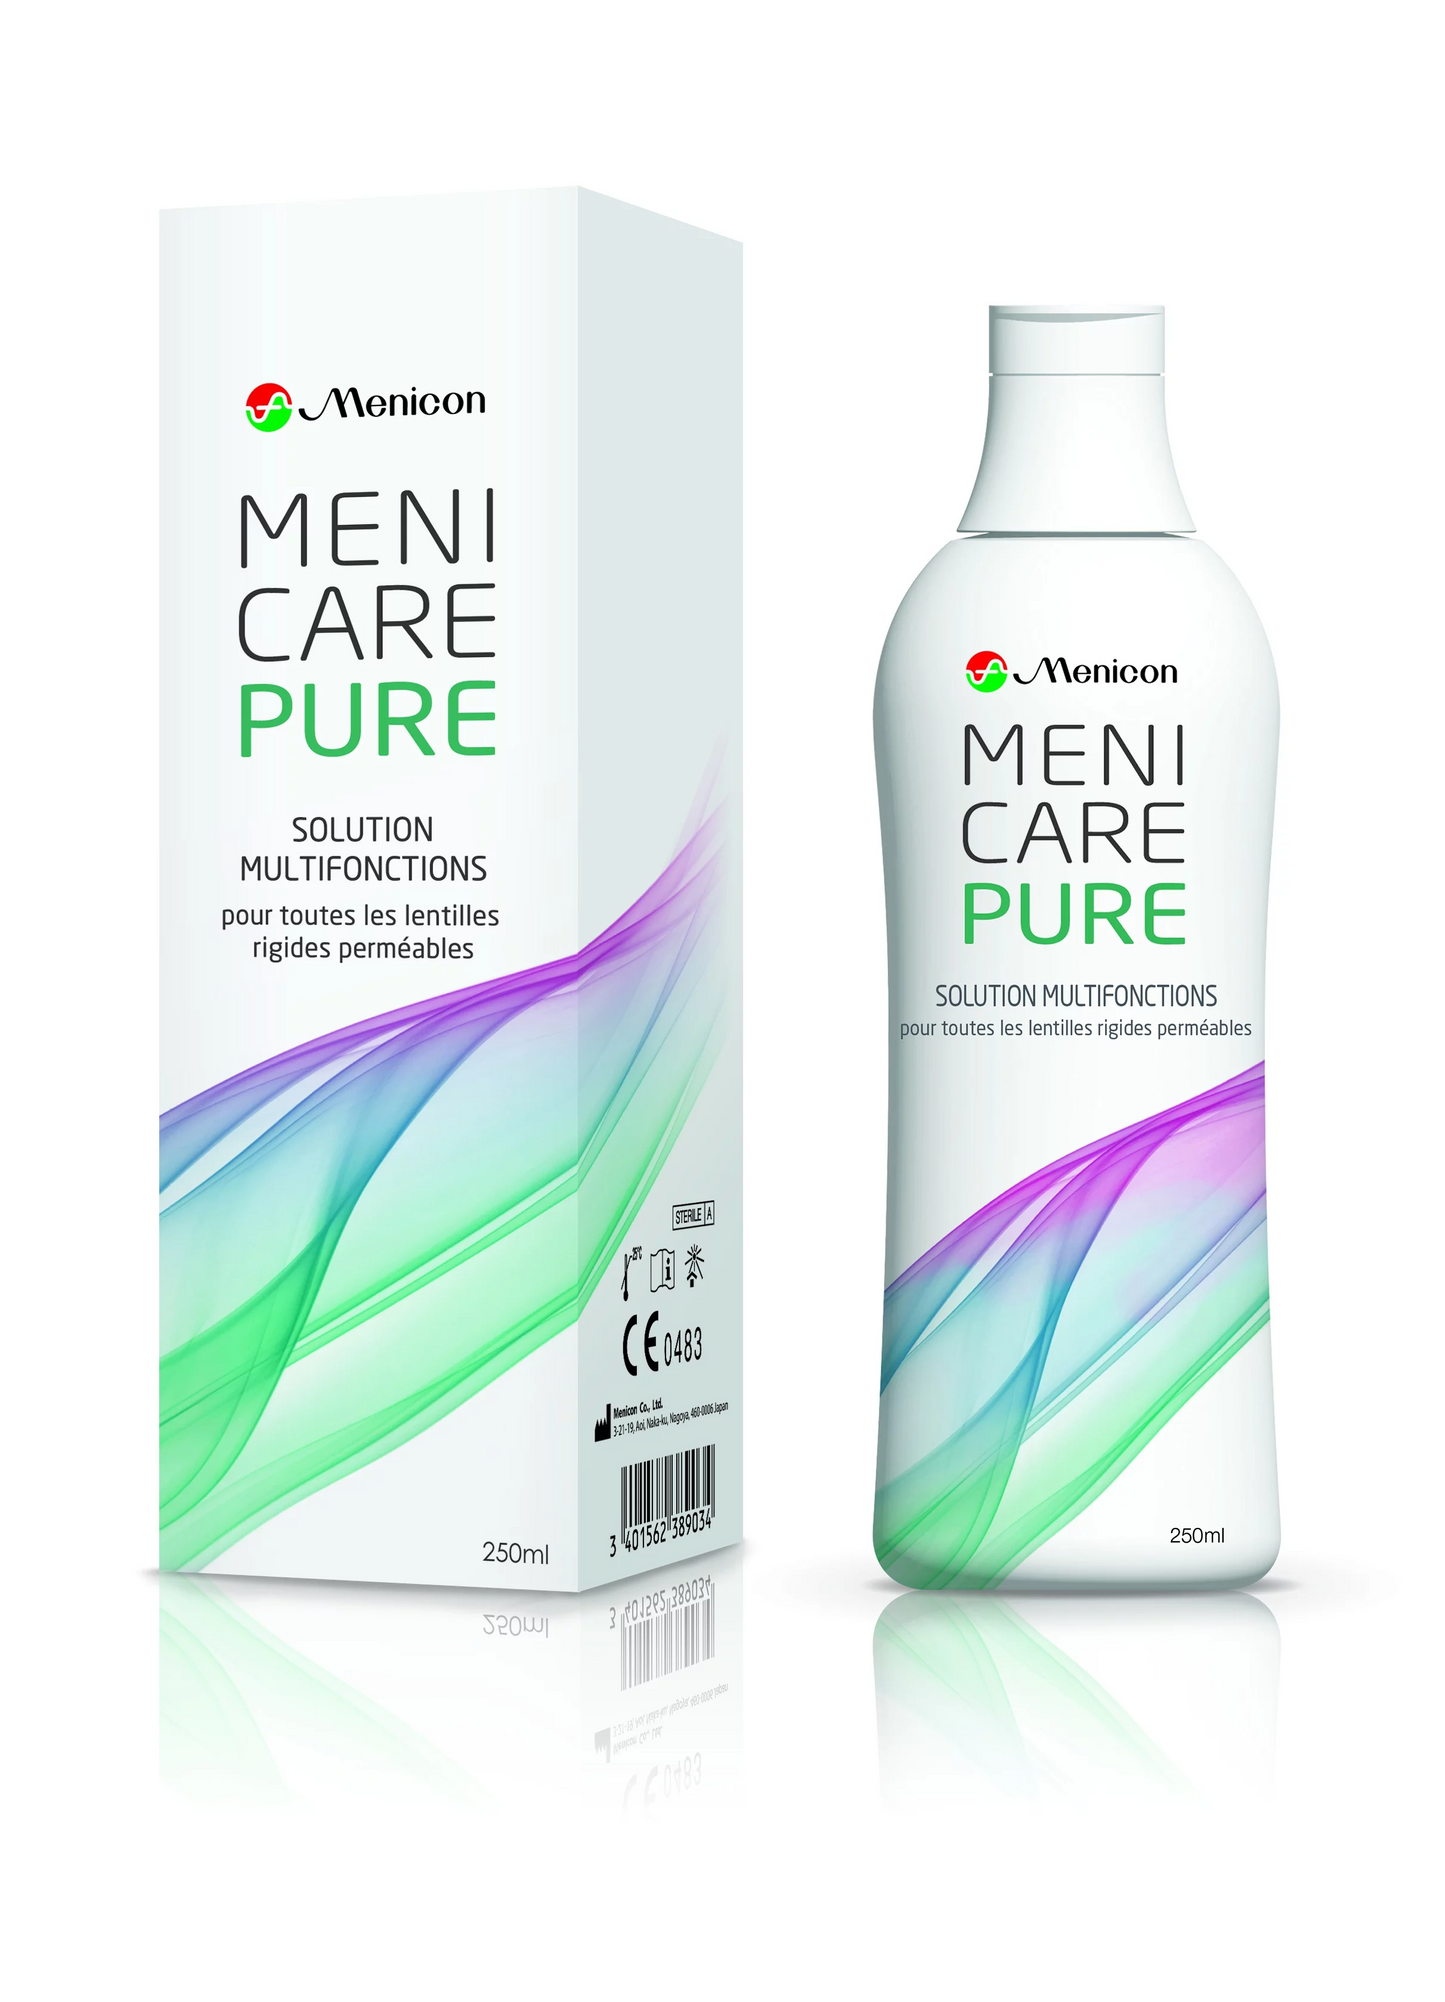 Menicare Pure 250ml MENICON